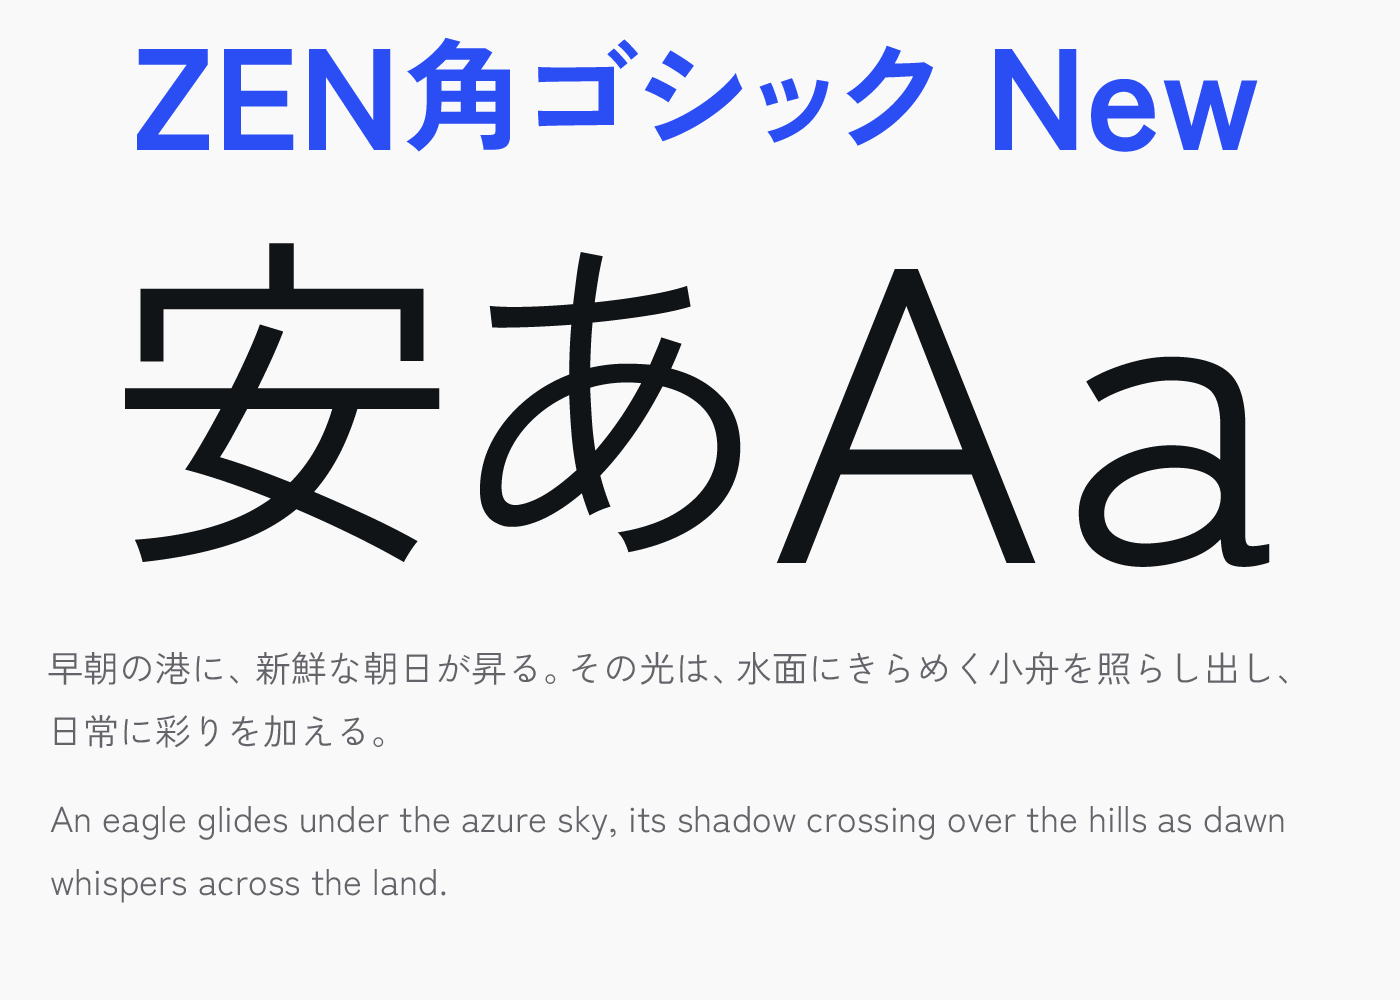 ZEN角ゴシック New